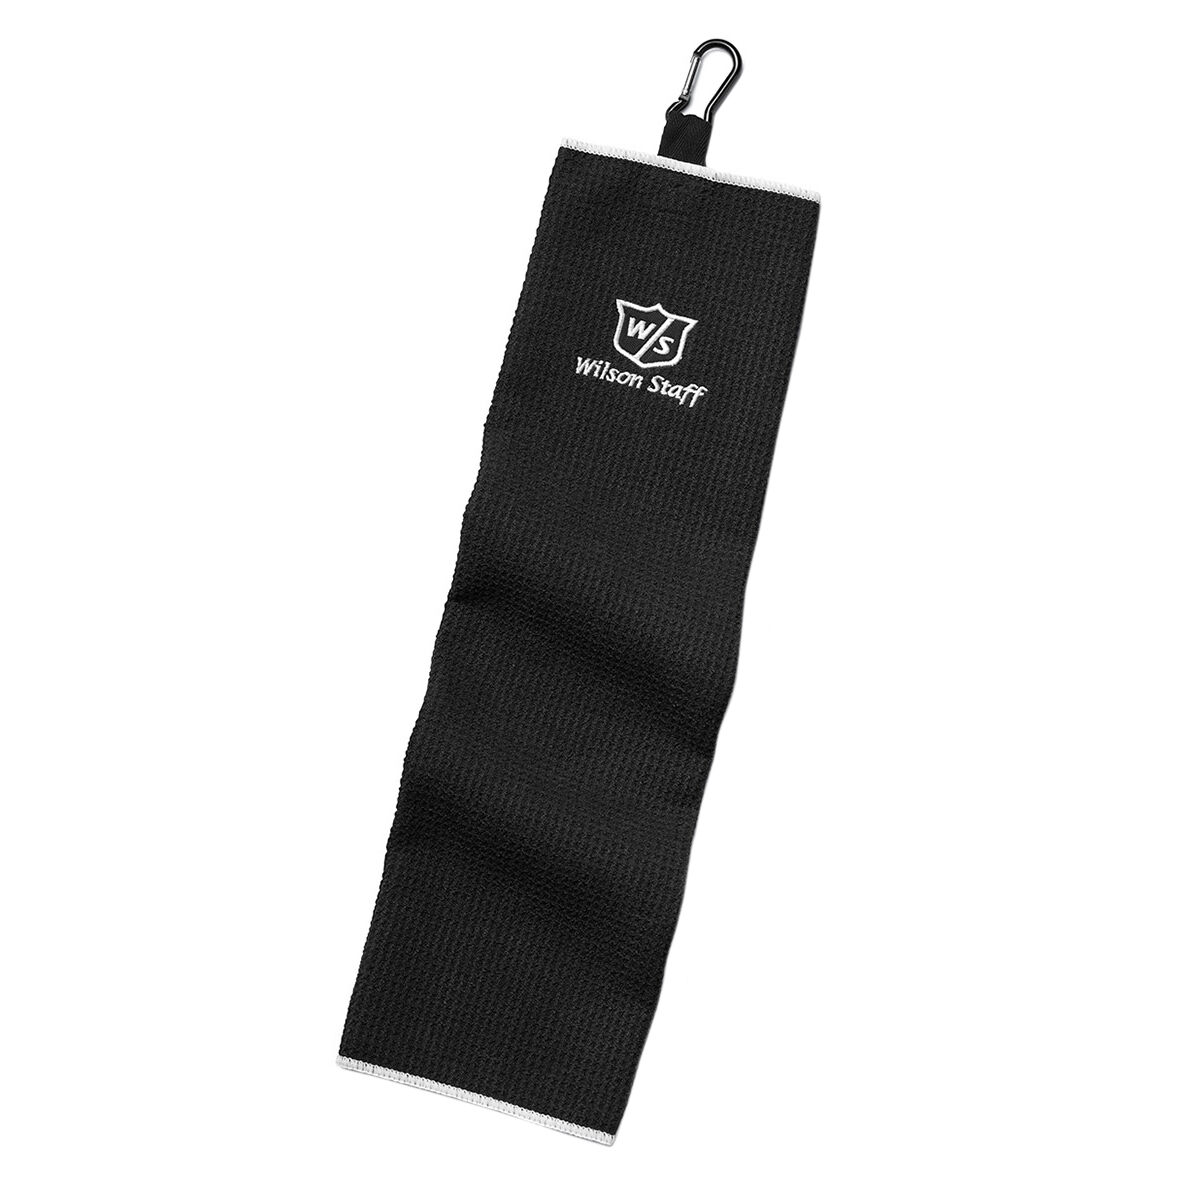 Wilson Staff Black Lightweight Microfiber Trifold Towel, One Size | American Golf von Wilson Staff